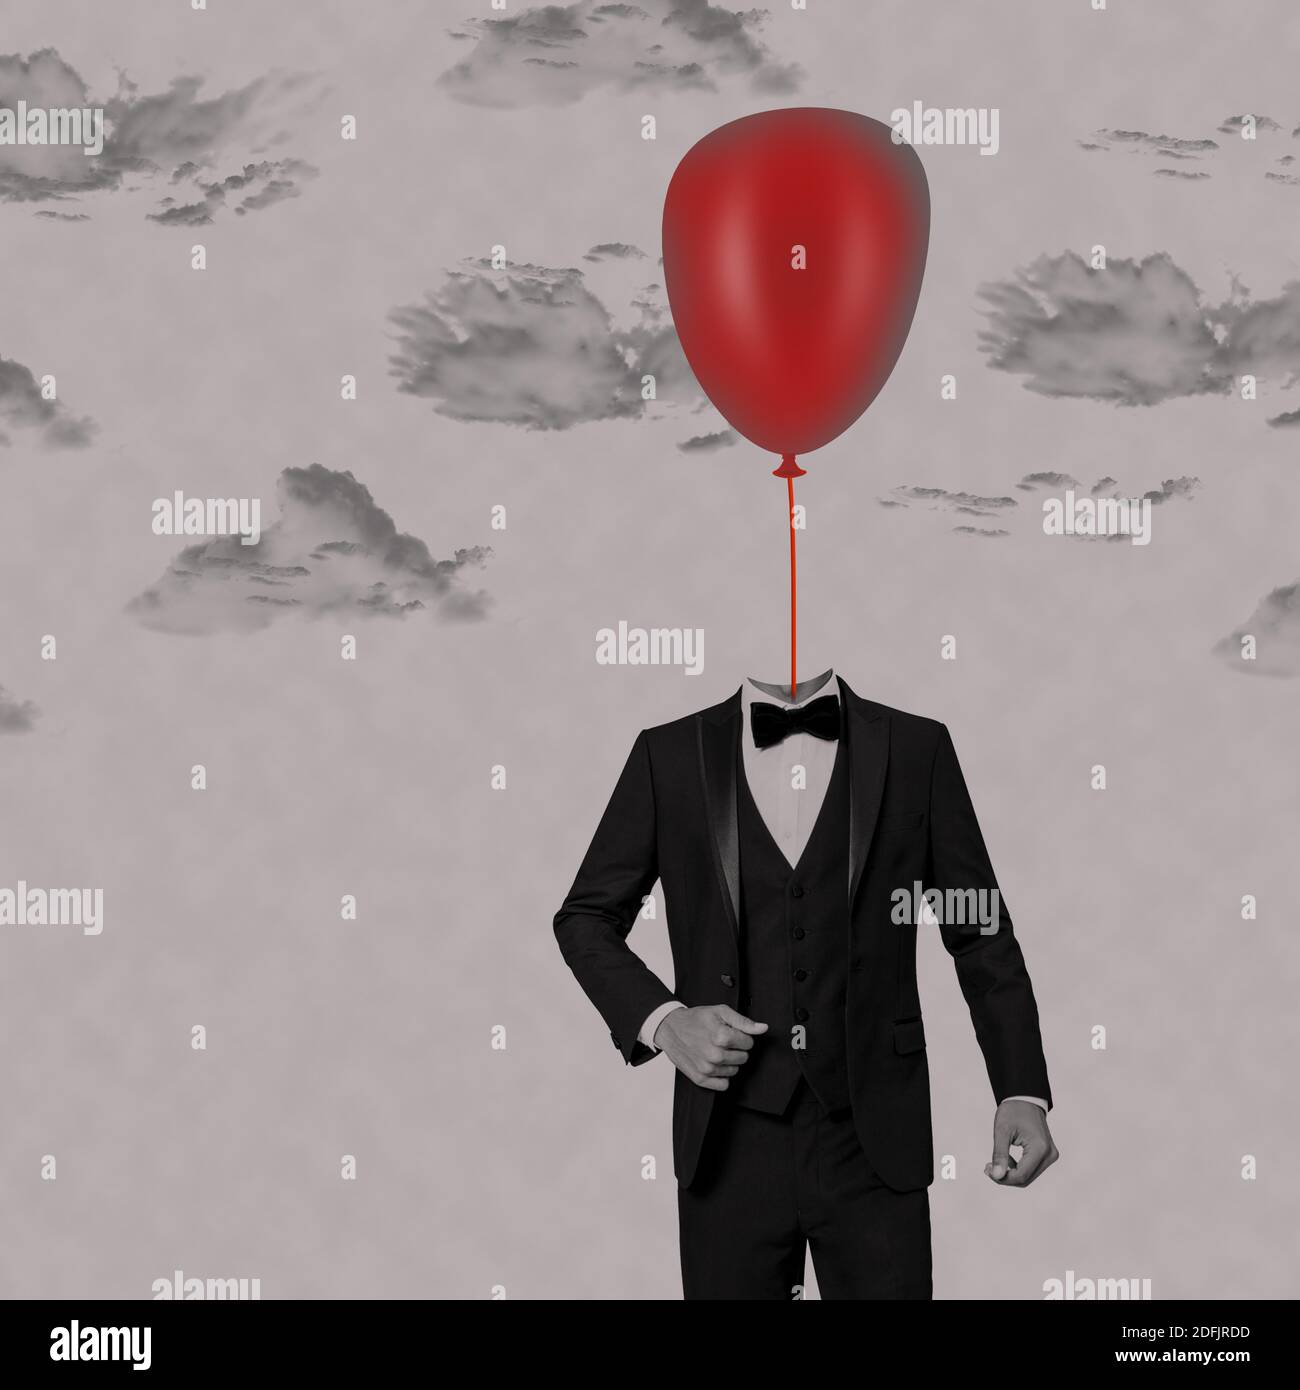 ballon suspendu rouge dans le col d'homme d'affaires, homme avec ballon pendu sur sa tête, fond avec nuage gris. concept minimal surréaliste. Banque D'Images